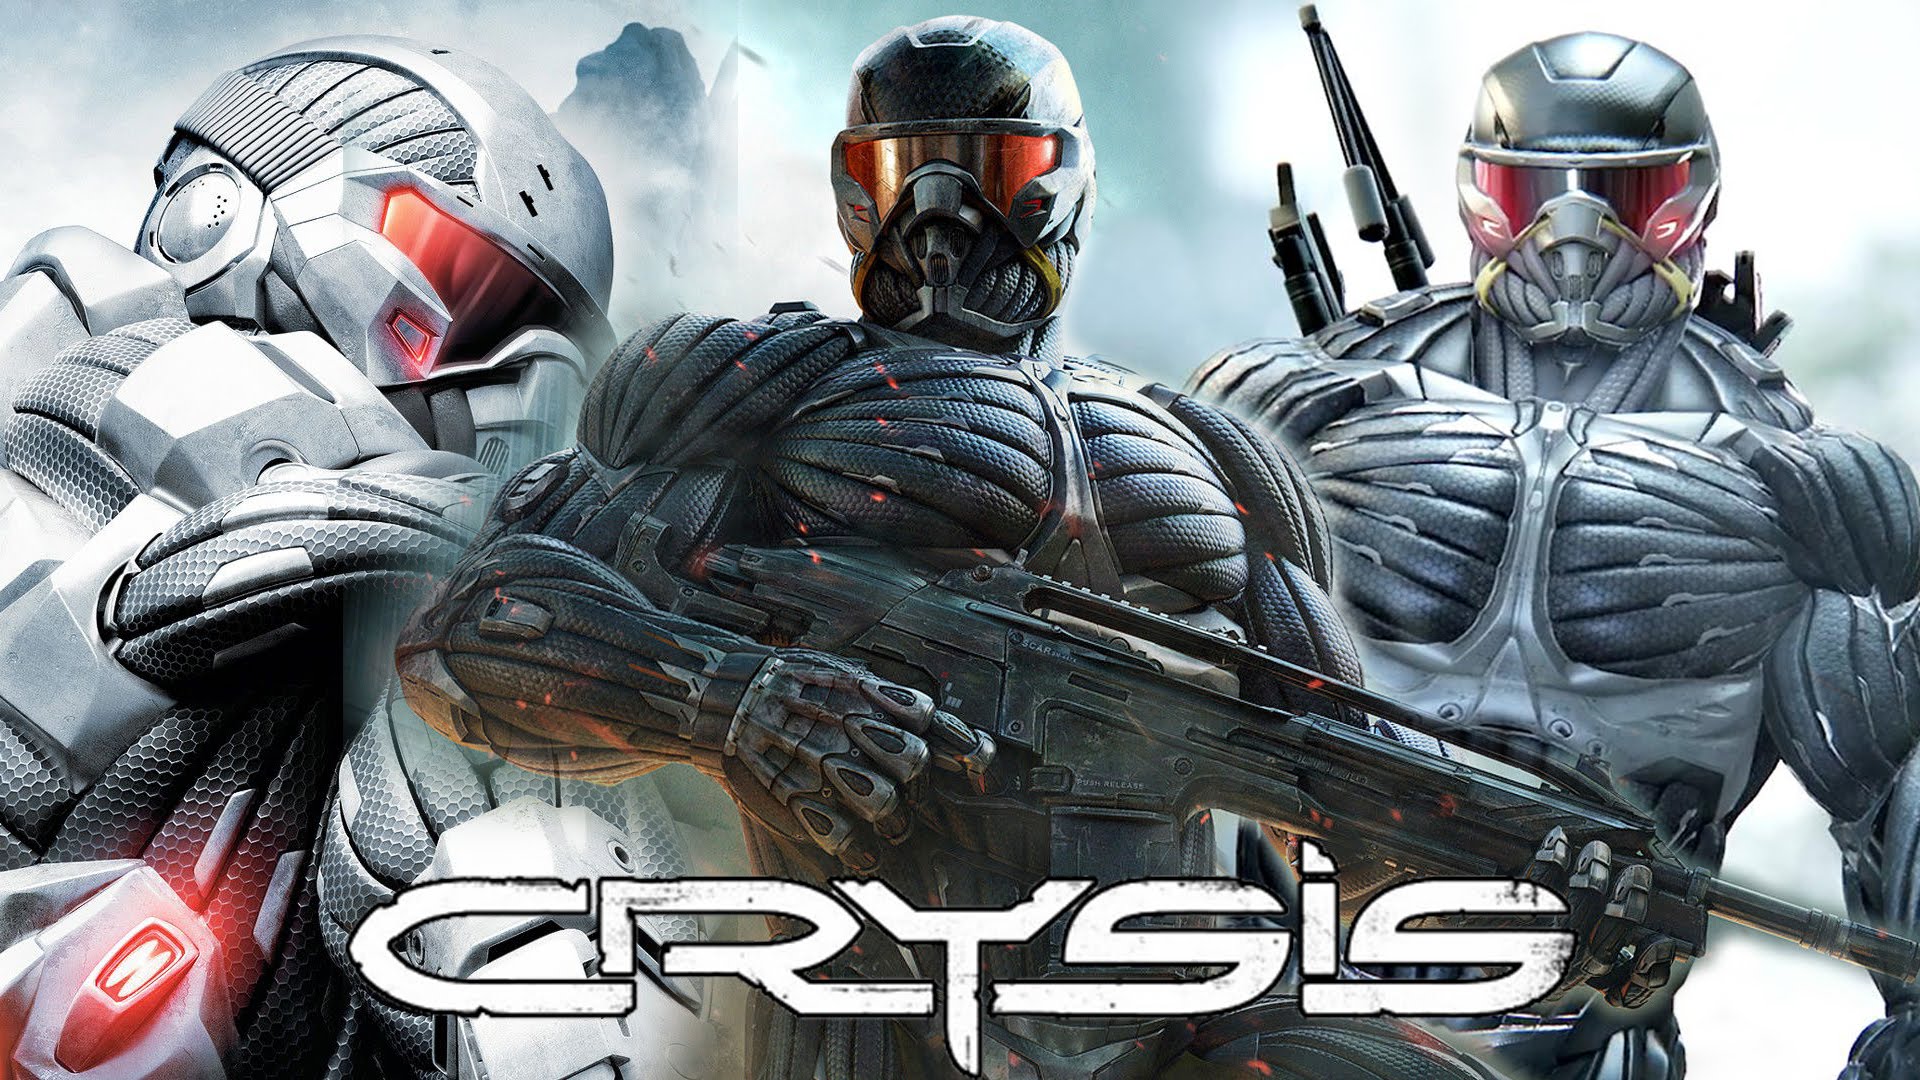 La trilogía de Crysis ahora disponible en Xbox One, gracias a la retrocompatibilidad